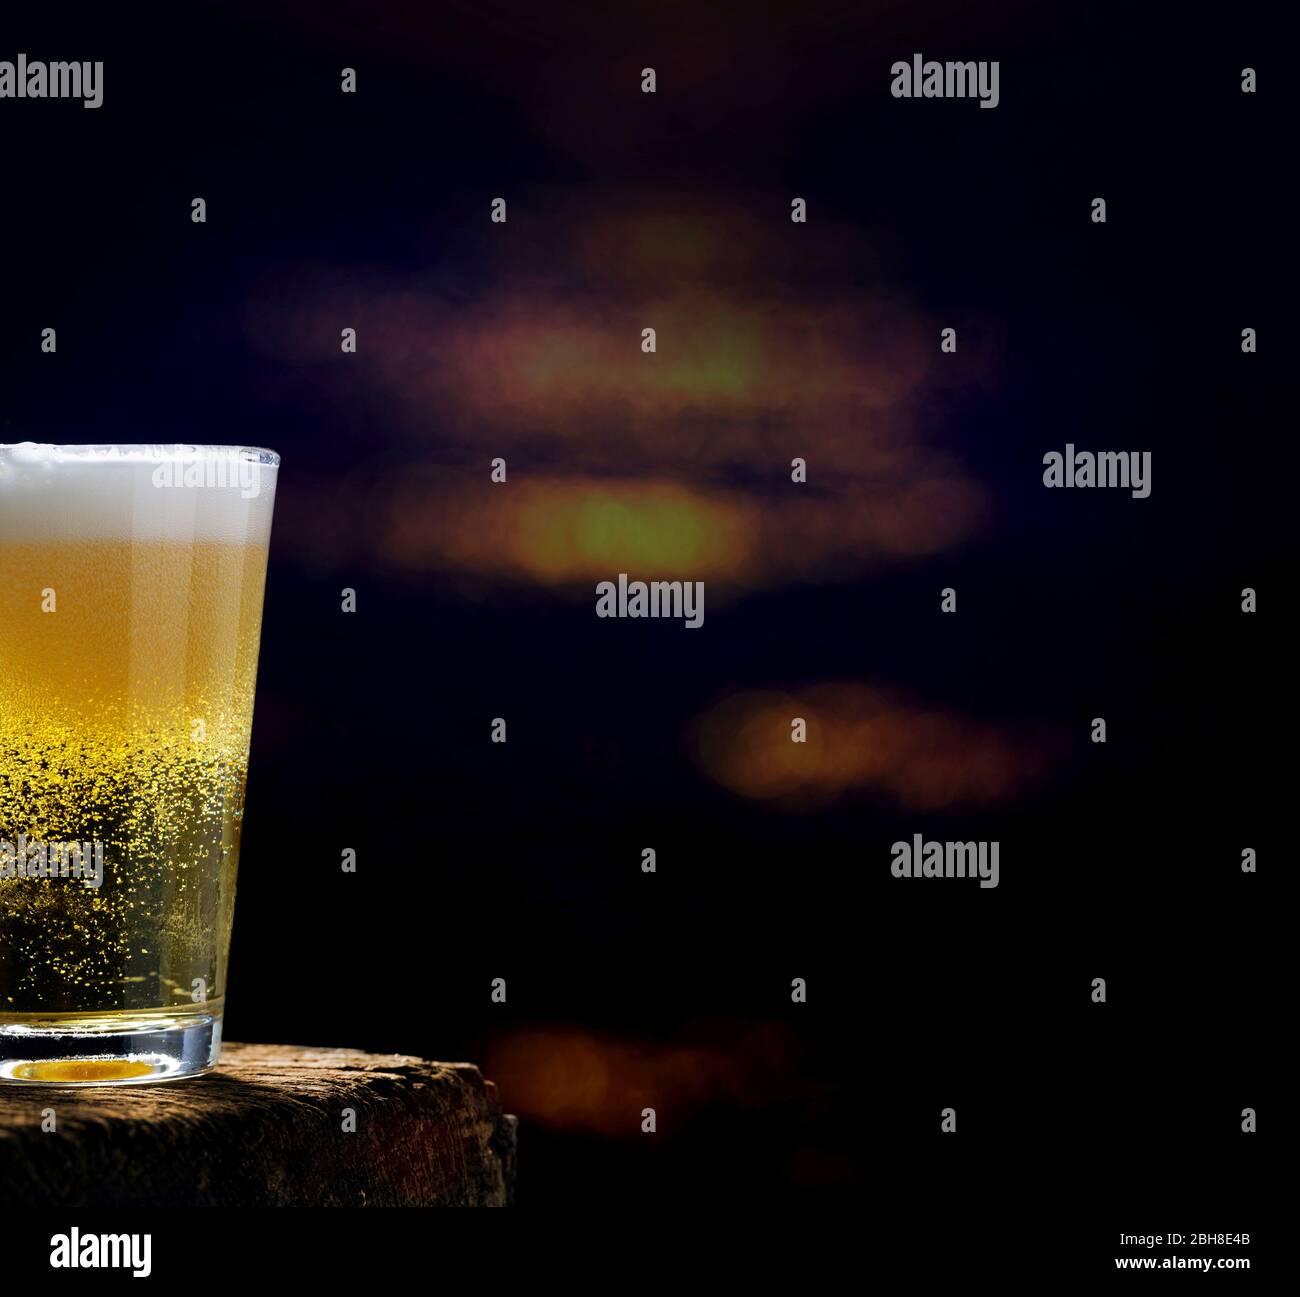 Bier, Bierglas auf Holztisch in einer dunklen Kneipe Stock Photo